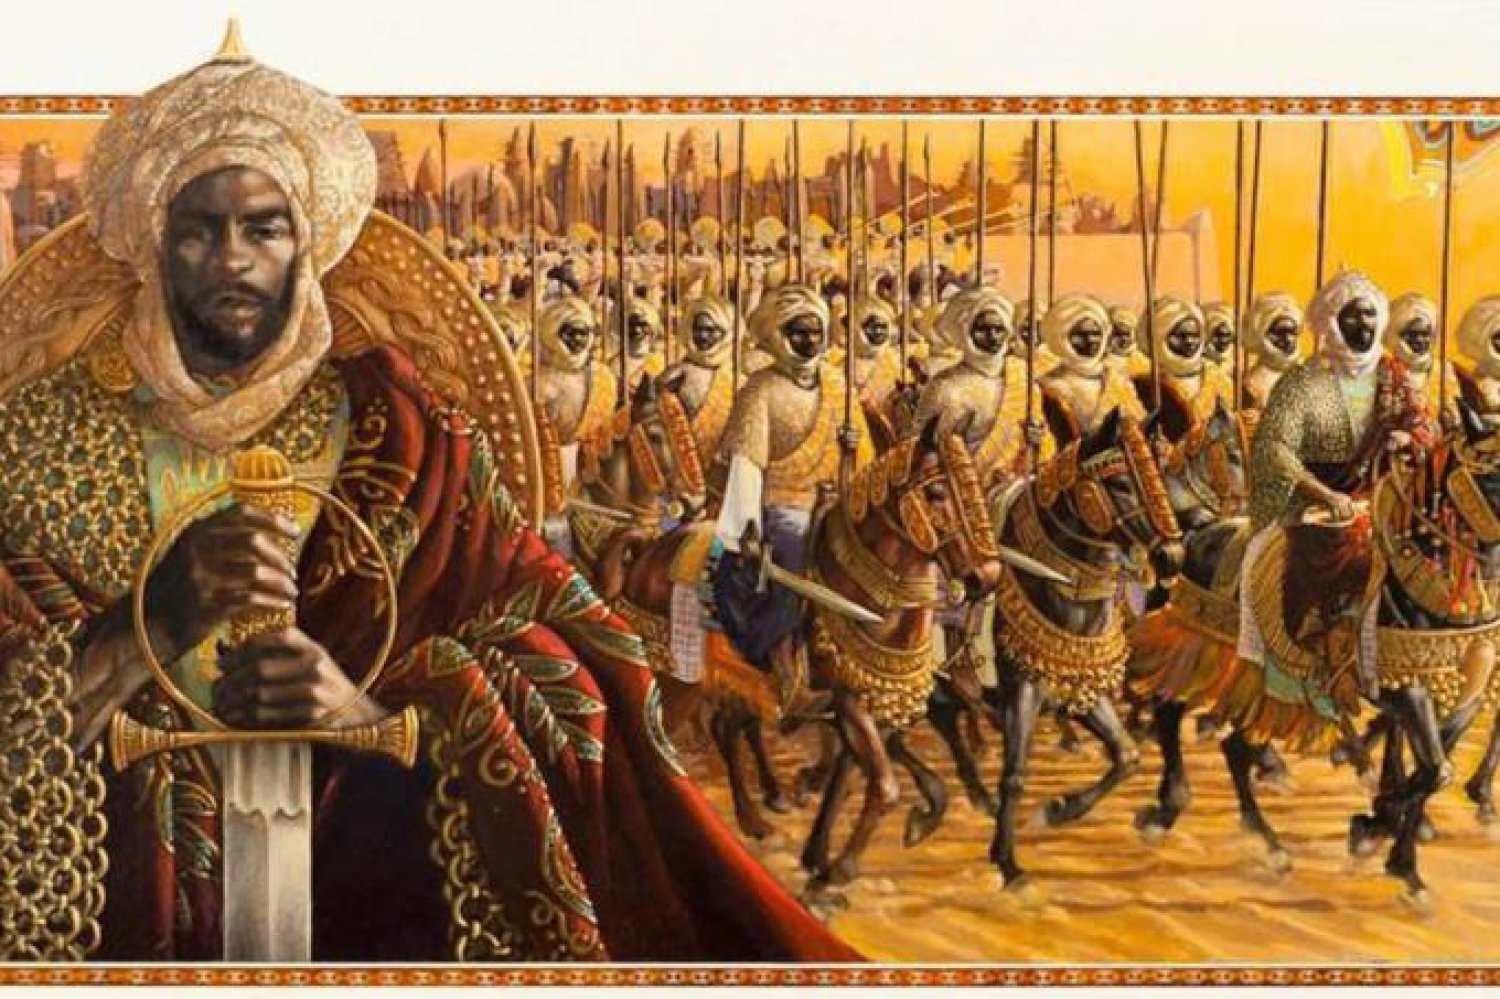 imperador mansa musa مانسا موسي .. قصة ملك أفريقي تدور حوله الكثير من الأساطير 